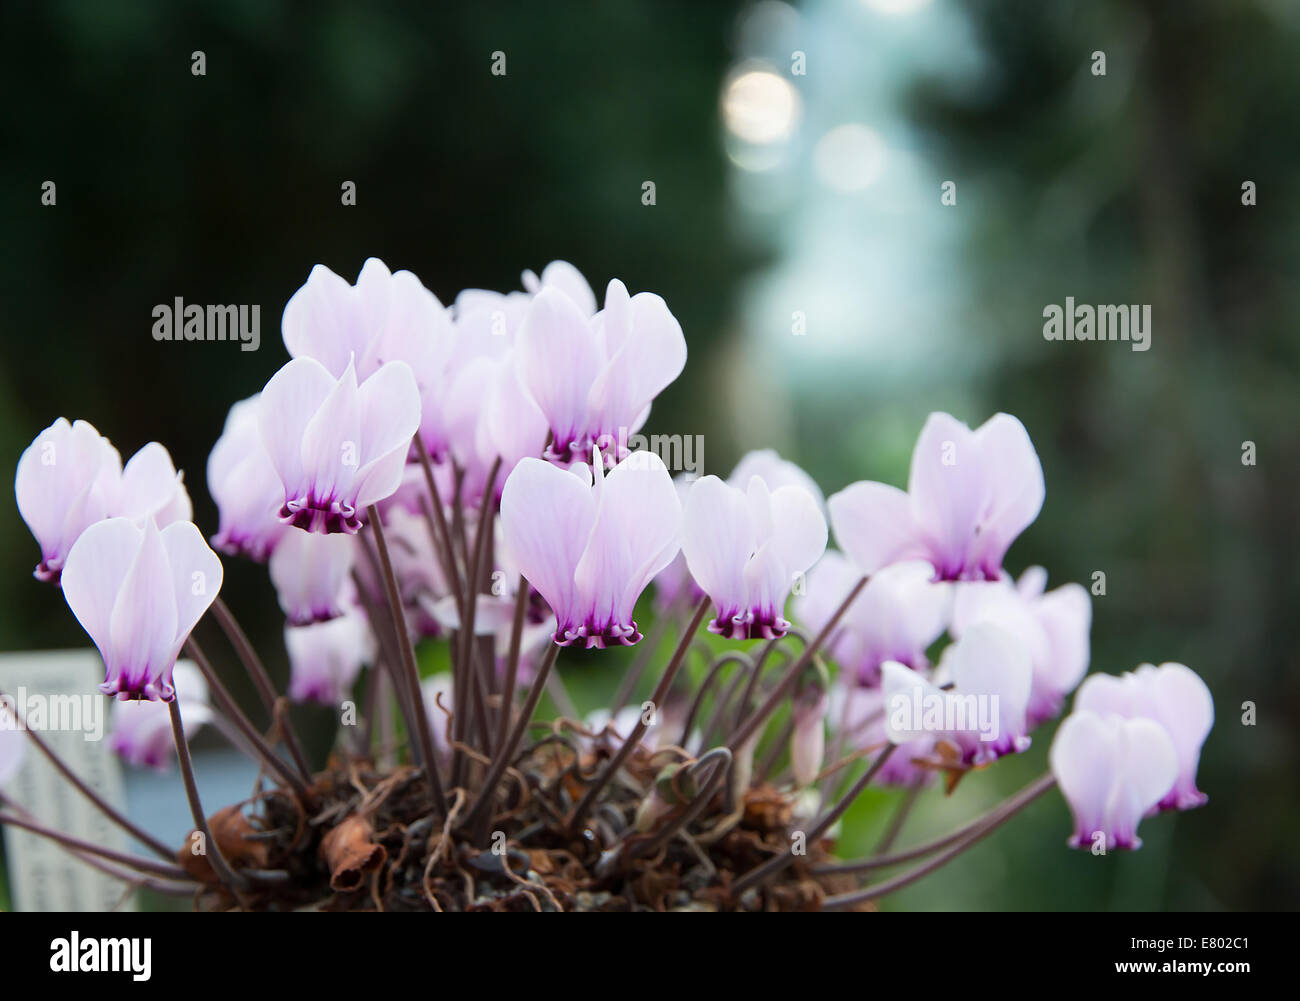 Alpenveilchen mit allerlei kleine lila Blüten in einem Topf. Stockfoto